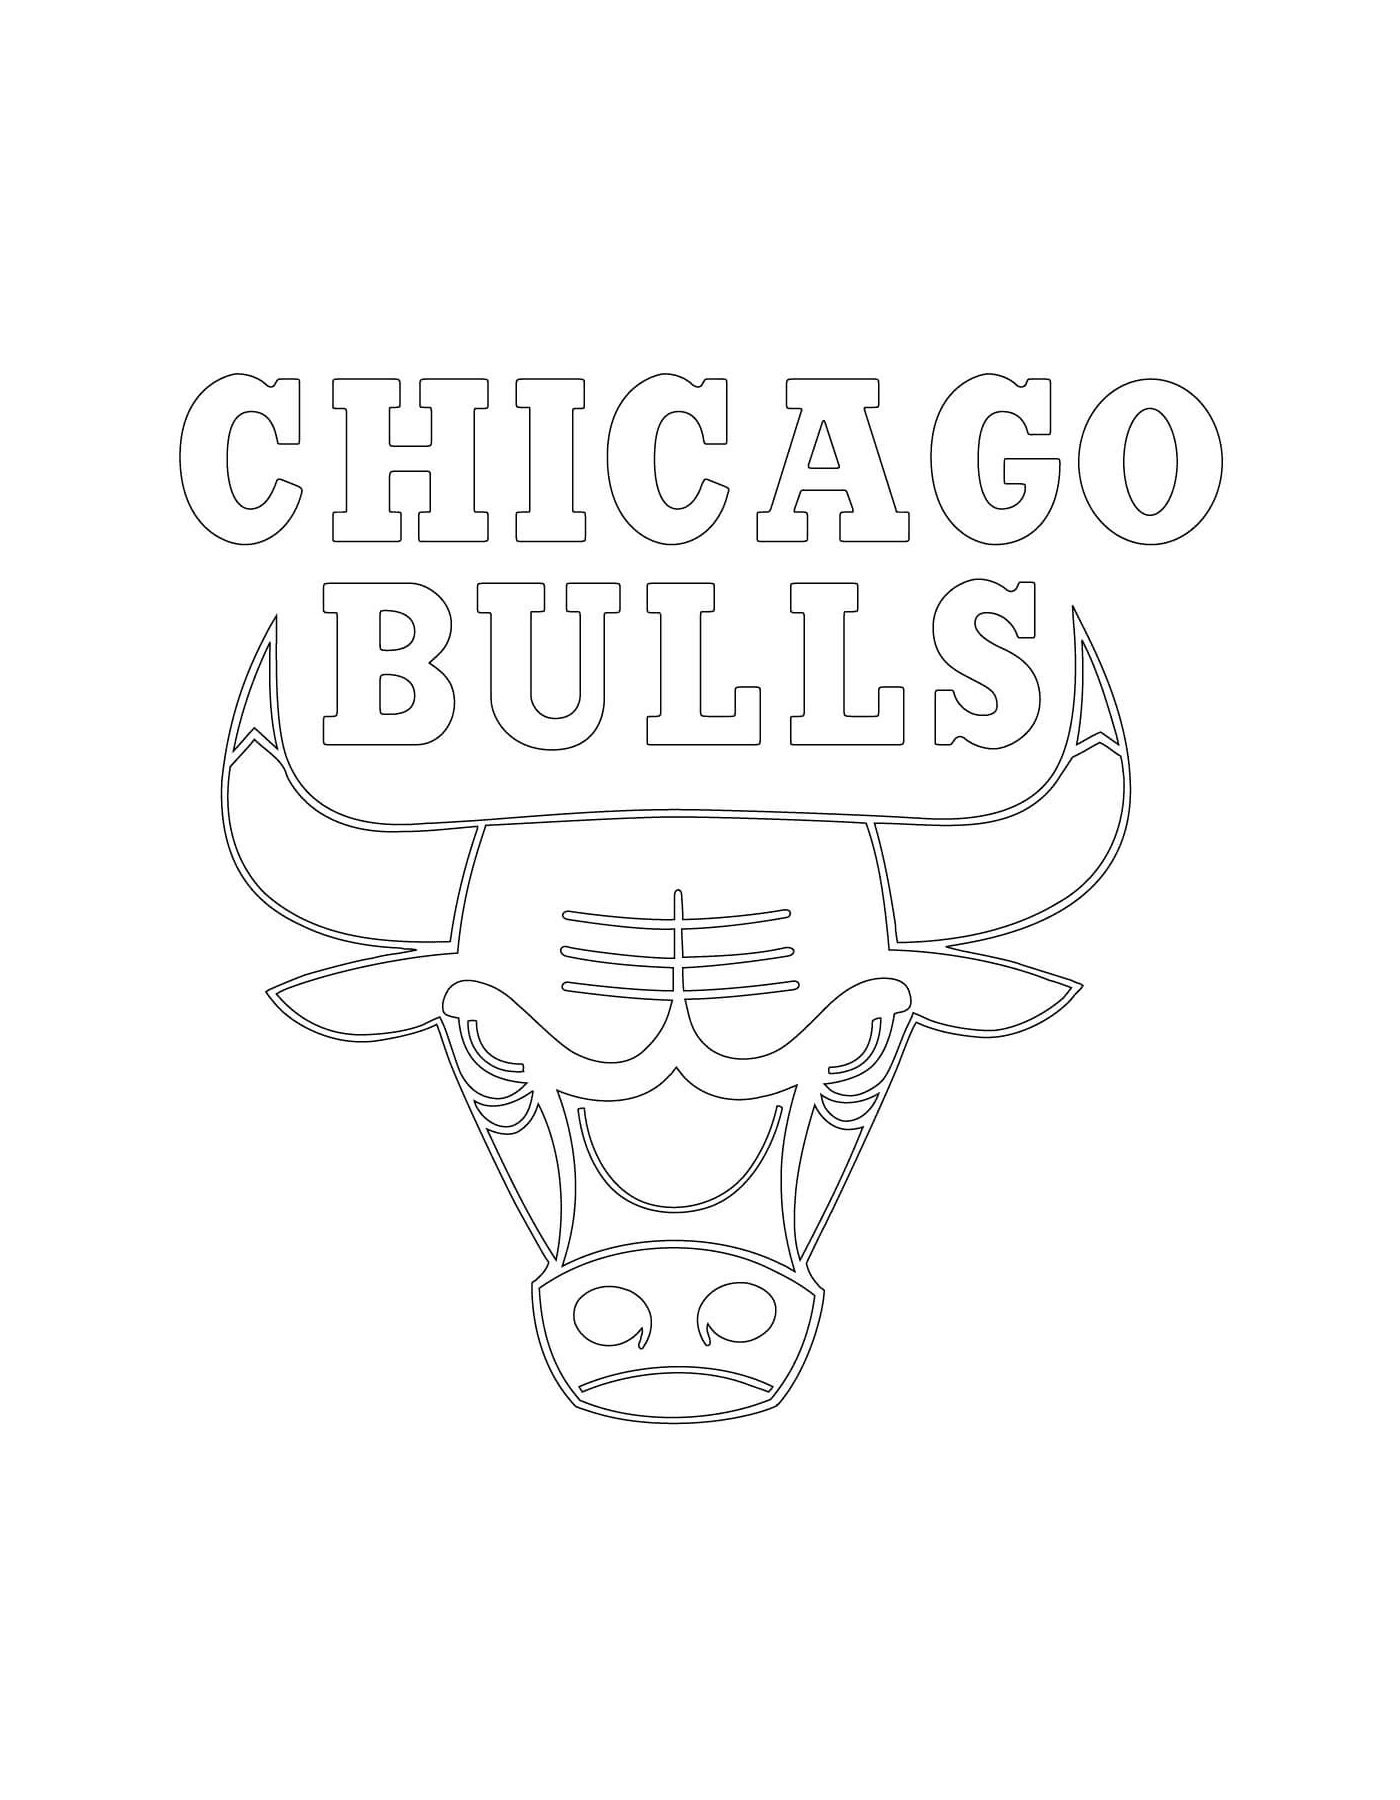   Le logo des Chicago Bulls de la NBA 